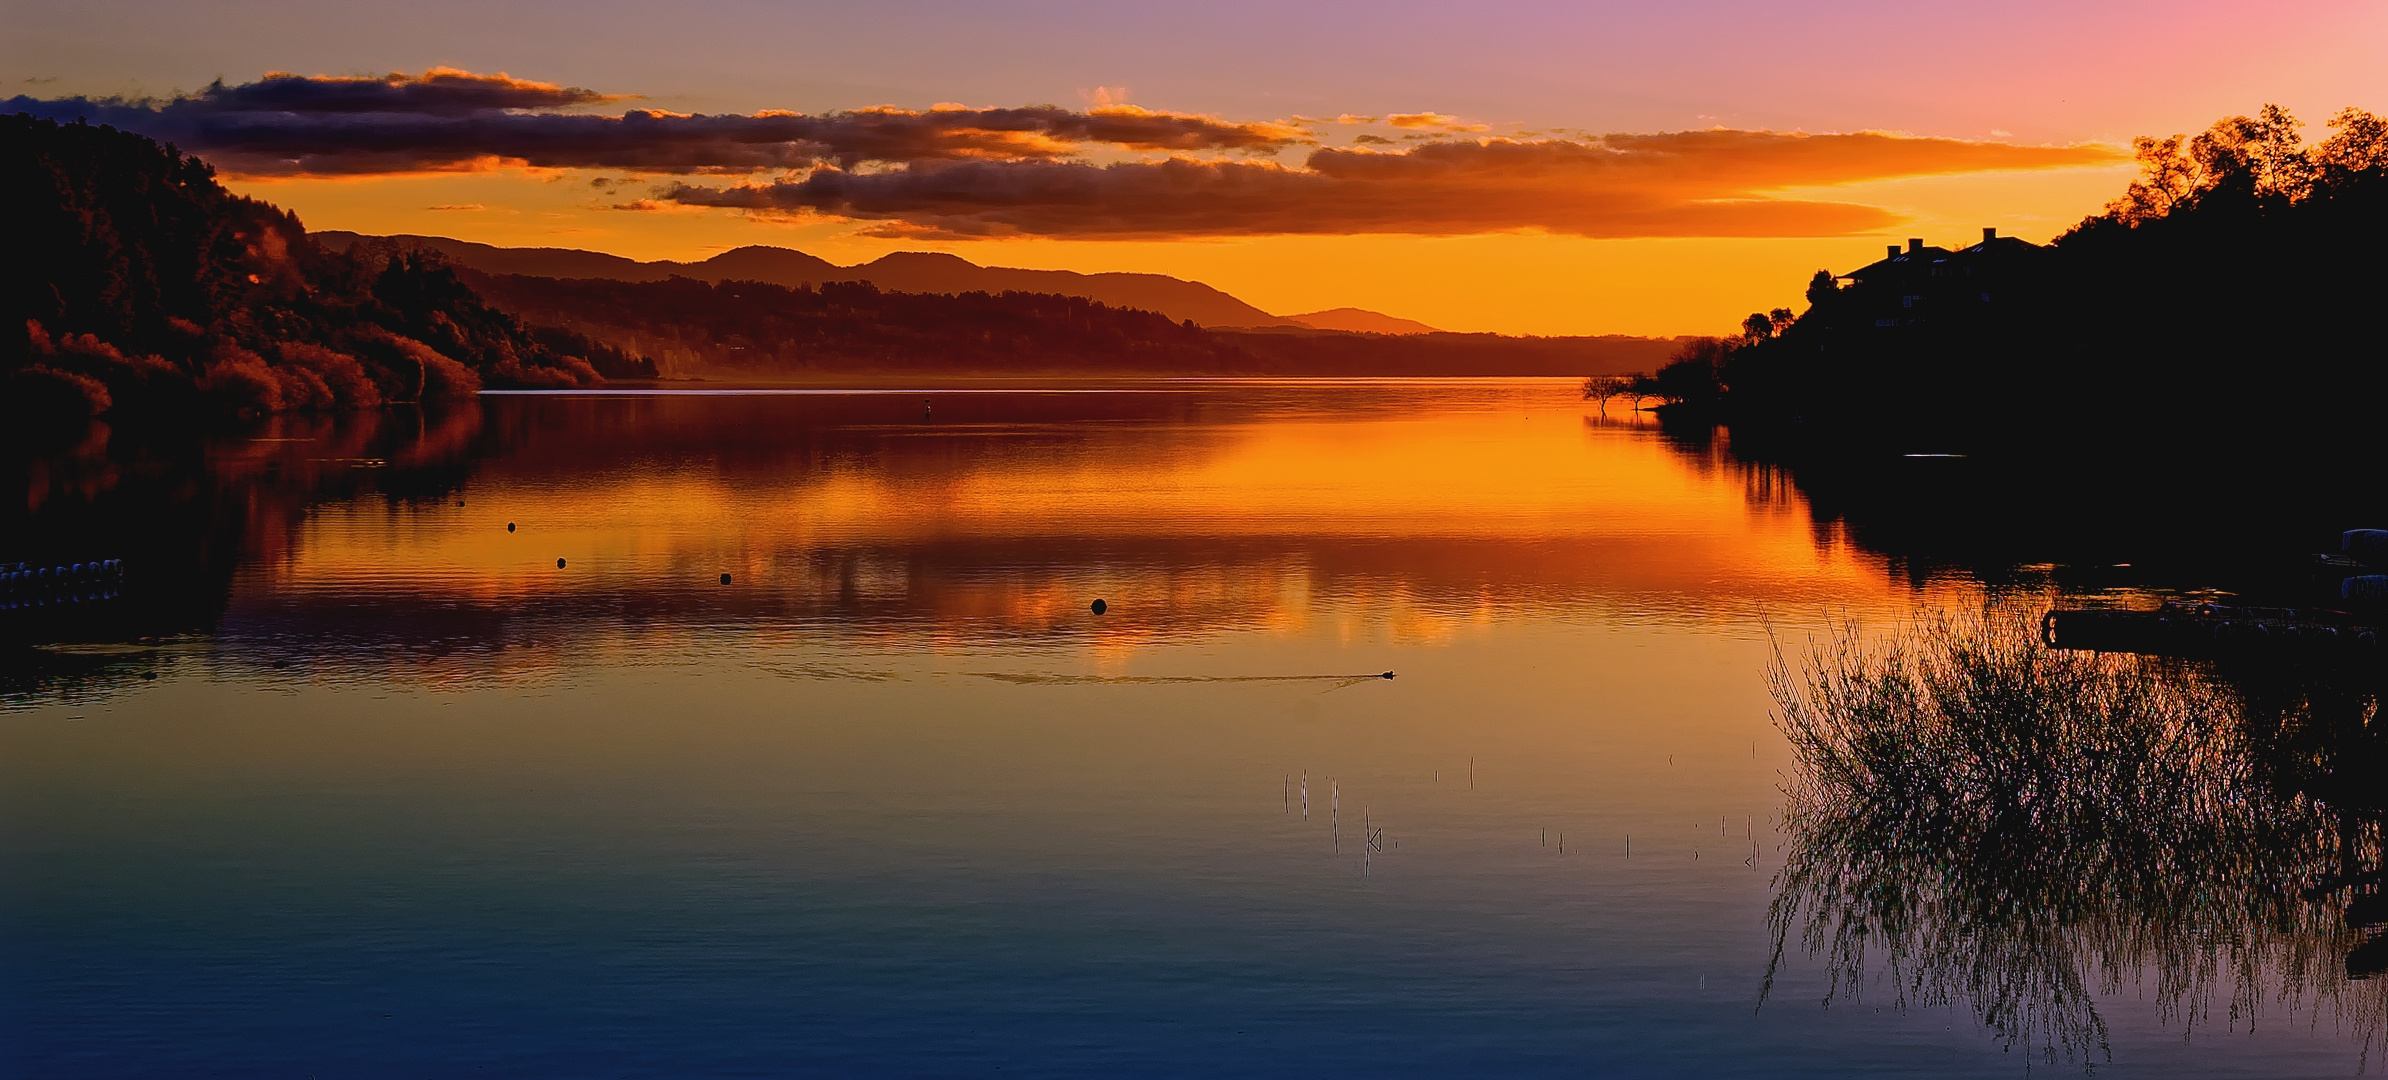 ...Abend am Lago Villarrica ...